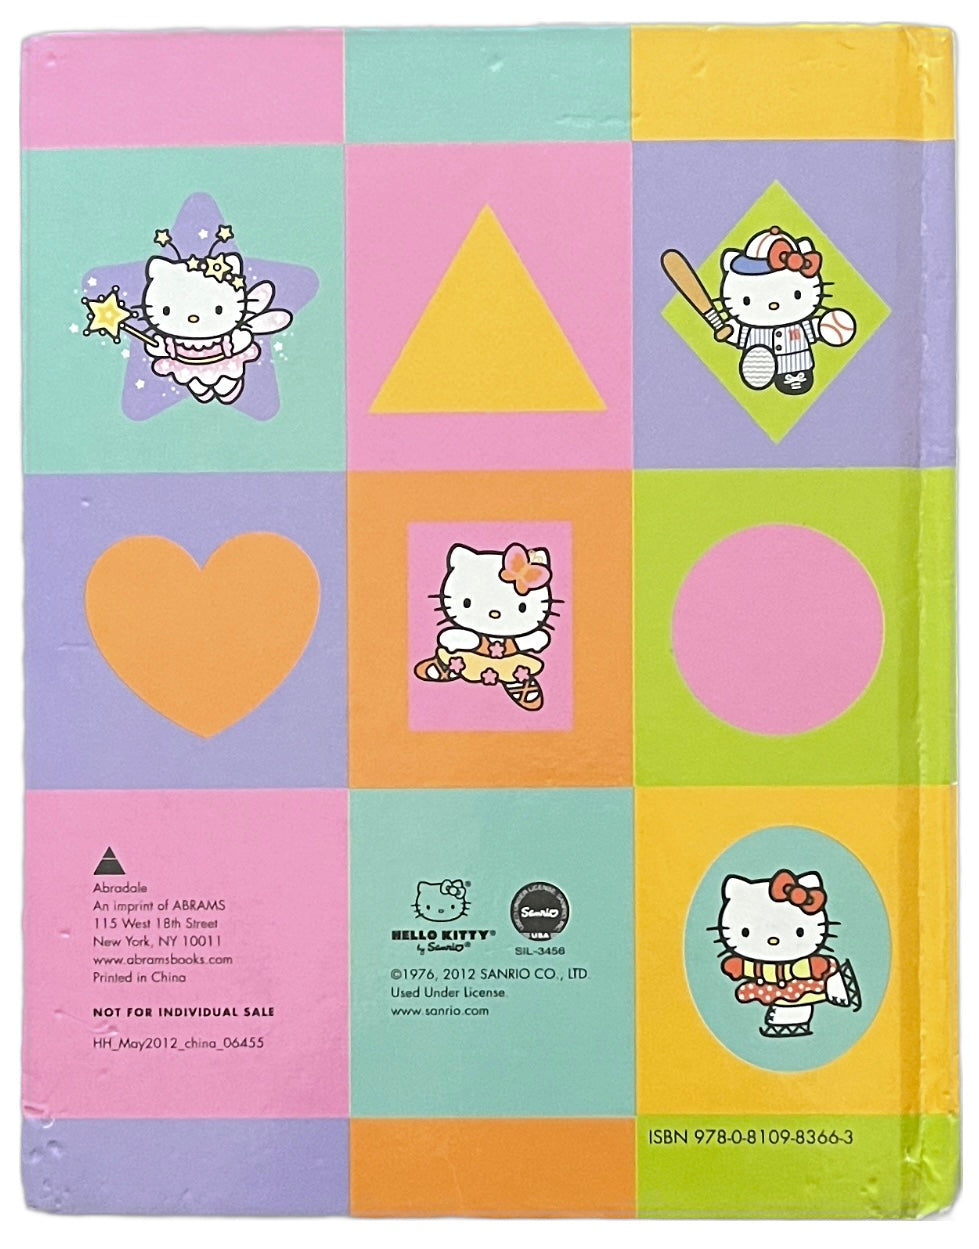 Hello Kitty: Hello Shapes!